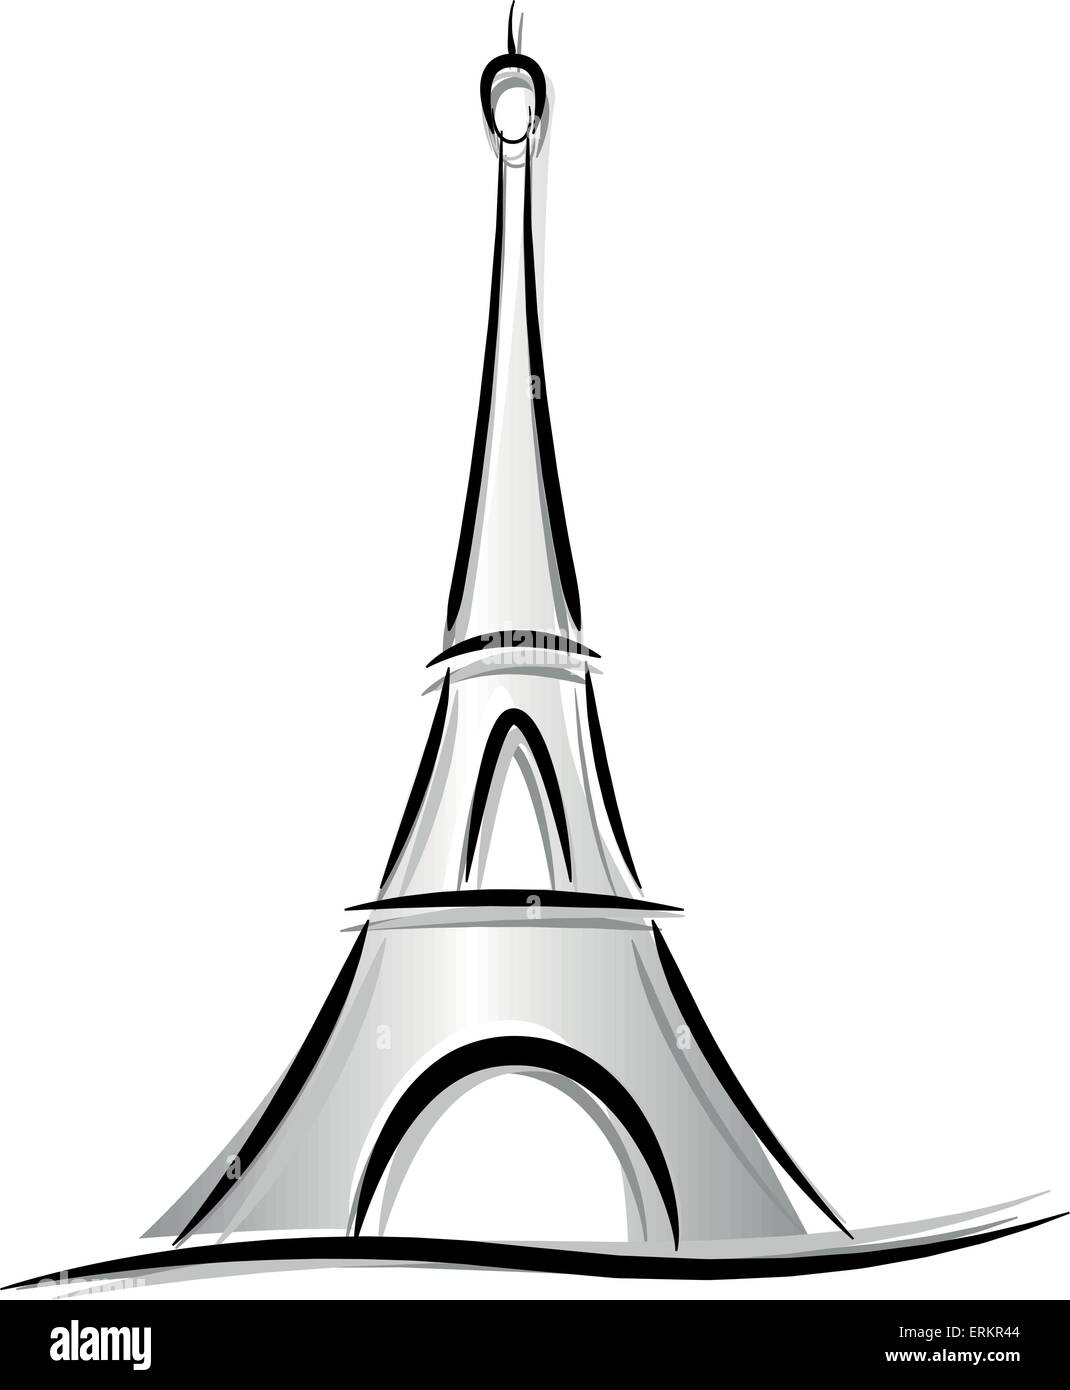 Vettore Di Disegno Della Torre Eiffel Su Sfondo Bianco Immagine E Vettoriale Alamy